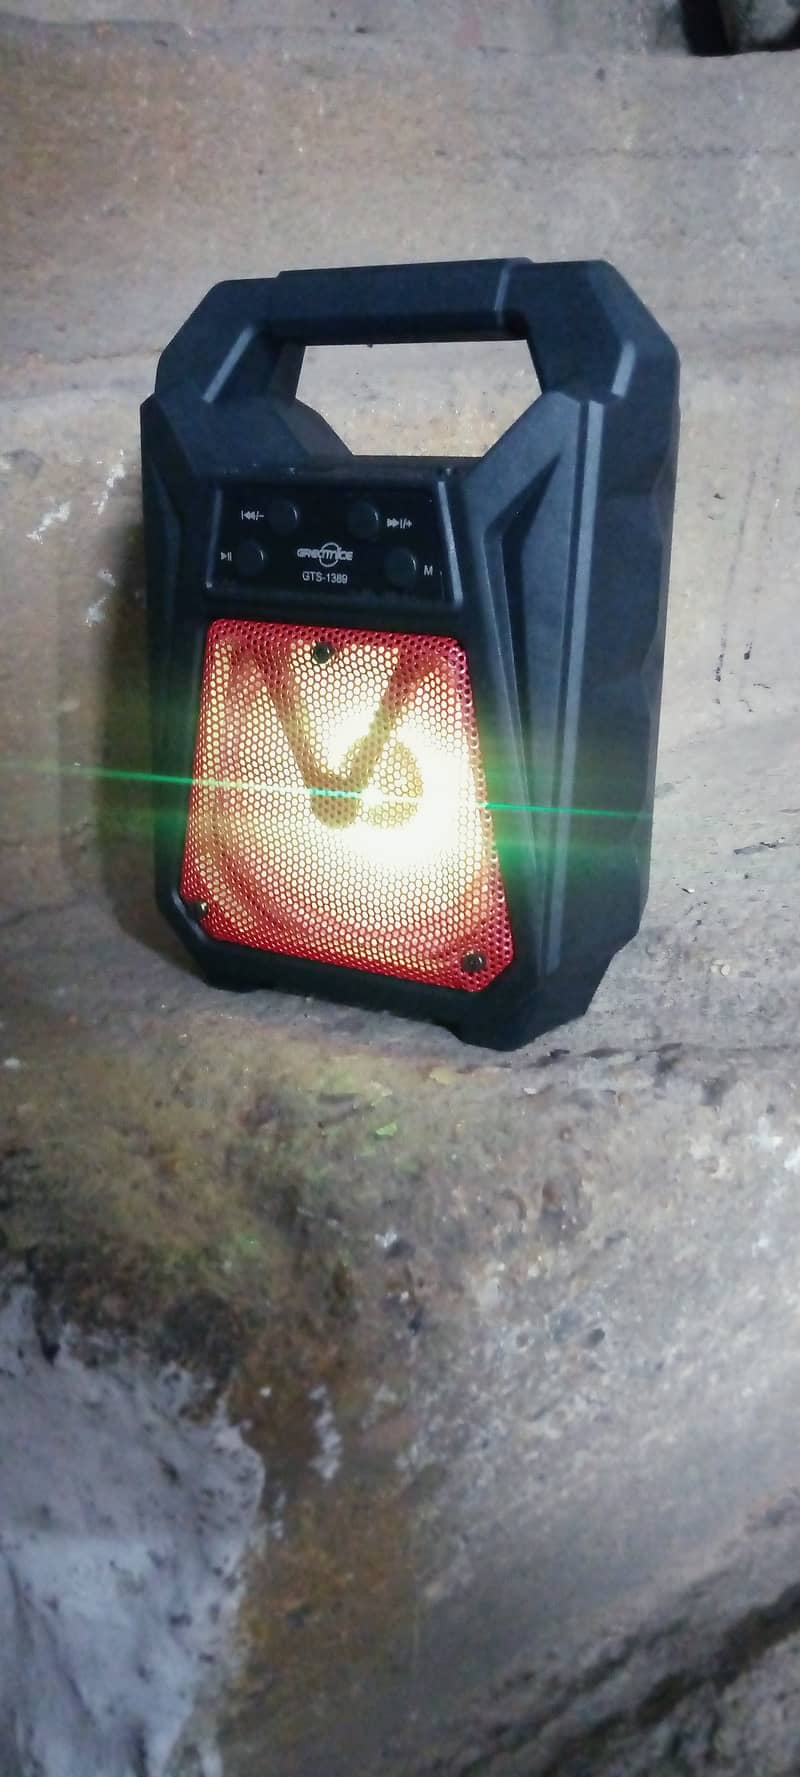 100 rs delivery best sound speaker offer abi k liya 1500 1